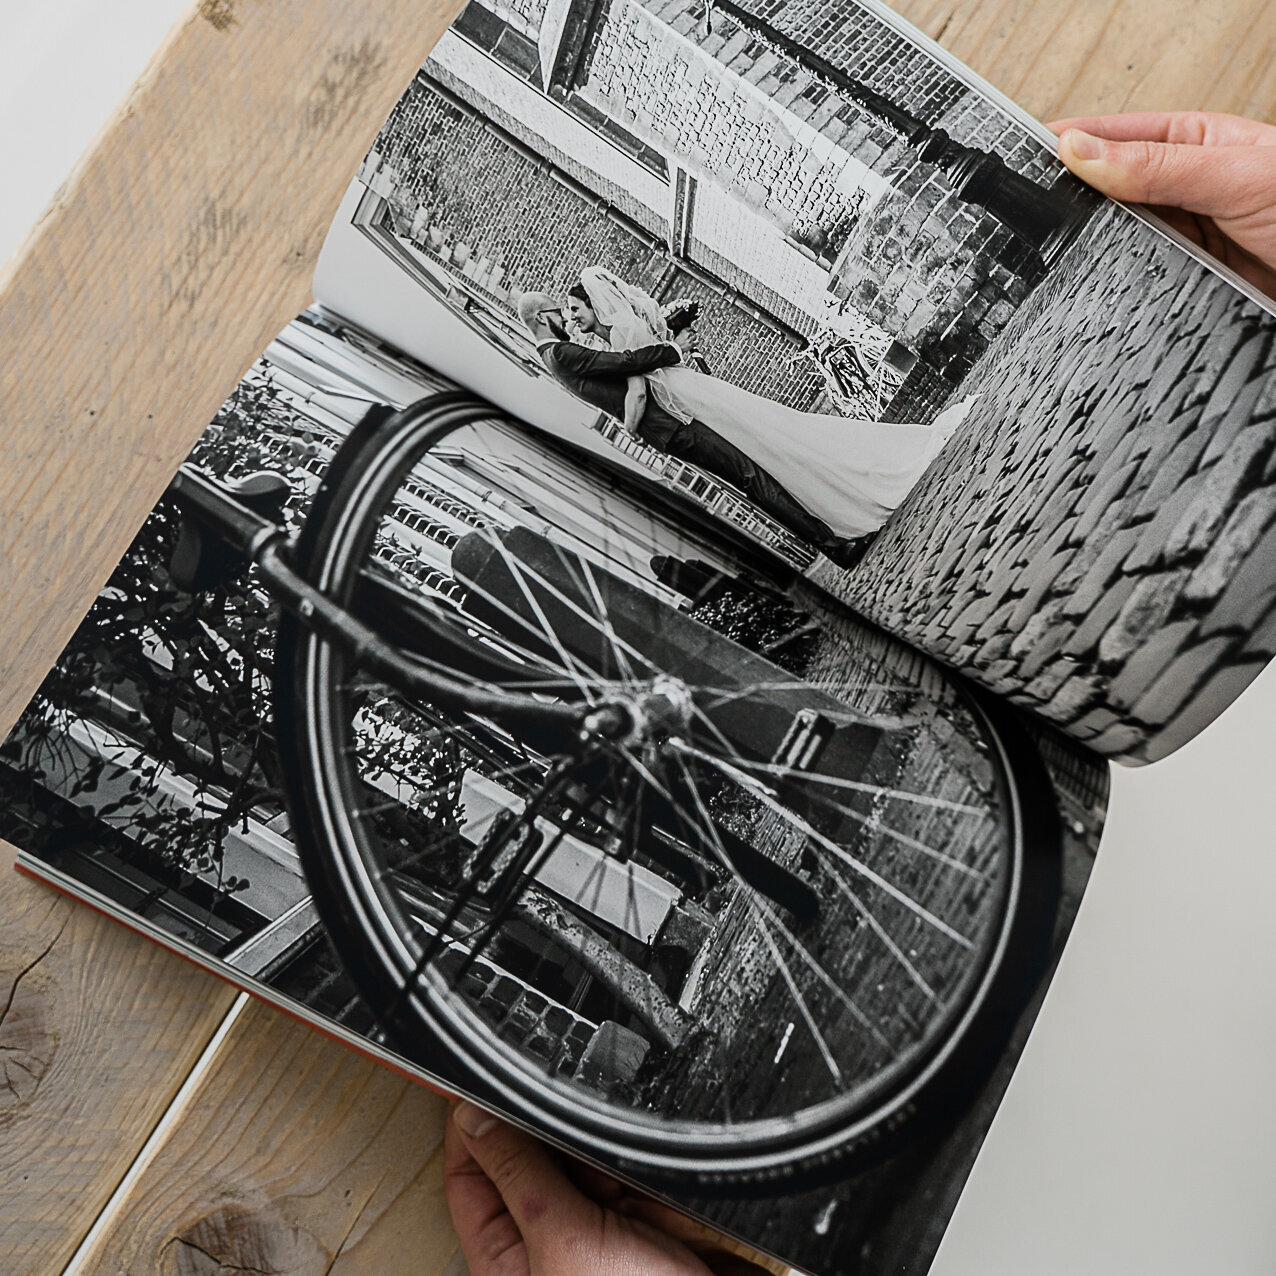 Trouwreportage in Leiden met fiets in magazine